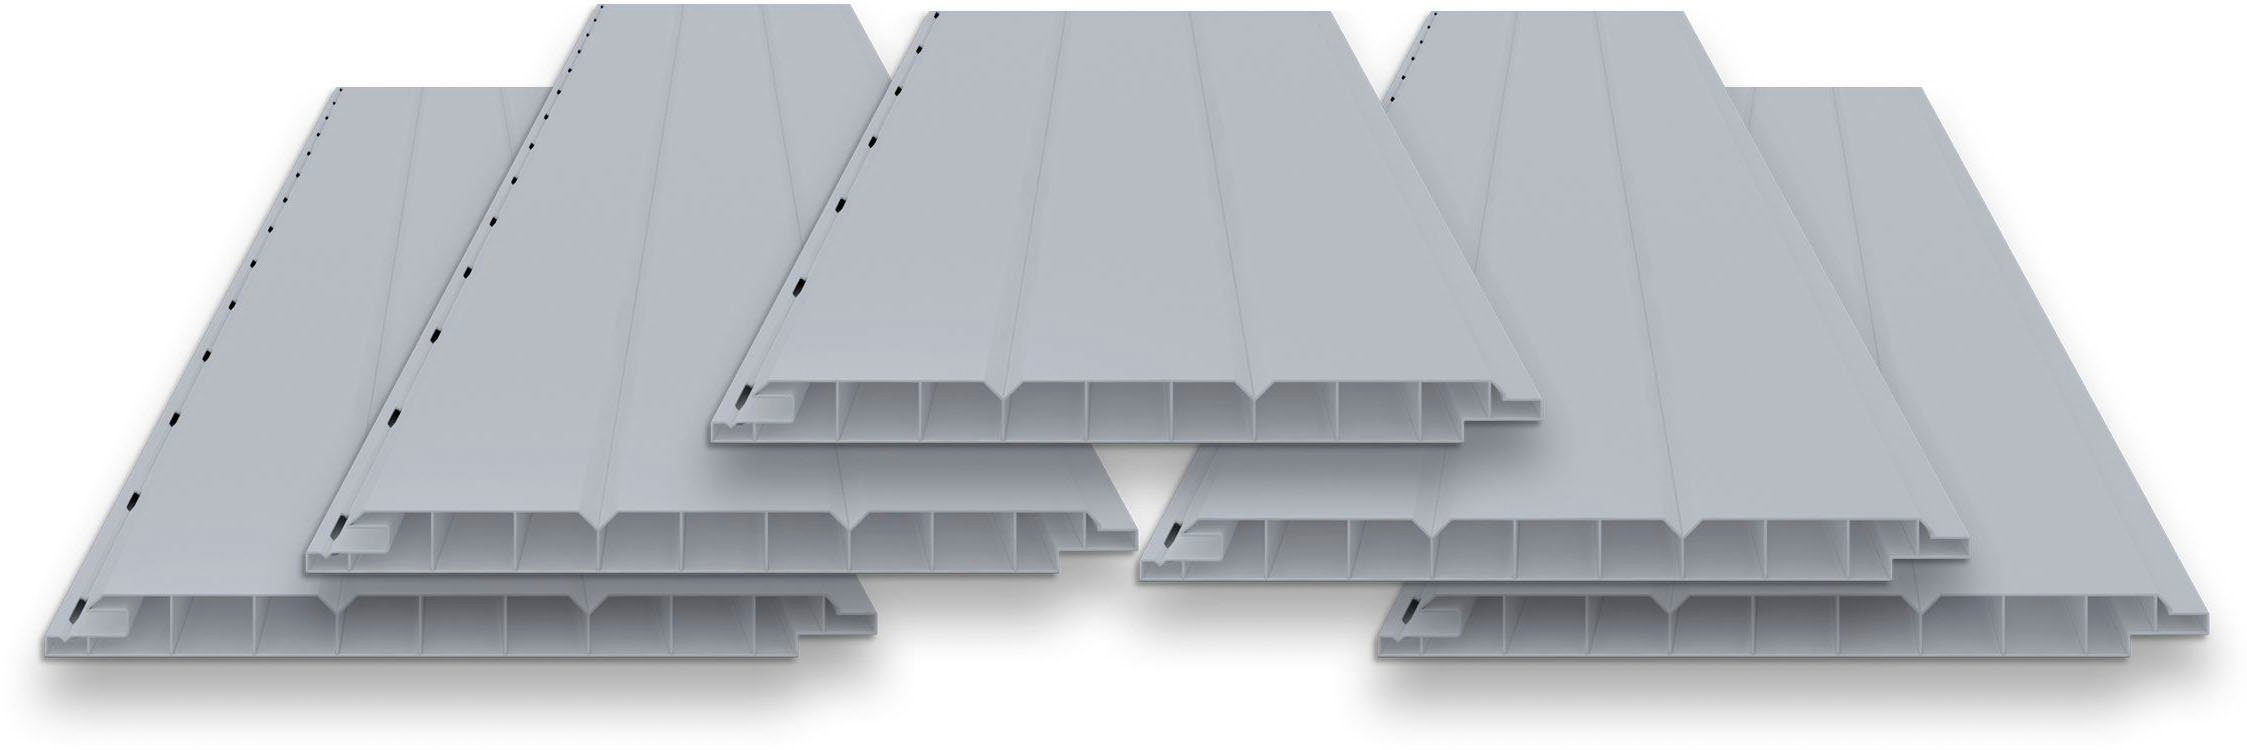 Tetzner & Jentzsch Verkleidungspaneel VP 200 grau, PVC-Hohlkammerprofil, BxL: 20x300 cm, (Spar-Set, 5-tlg., 3 m) 3-Brett-Optik, mit Langlöchern für die Verschraubung